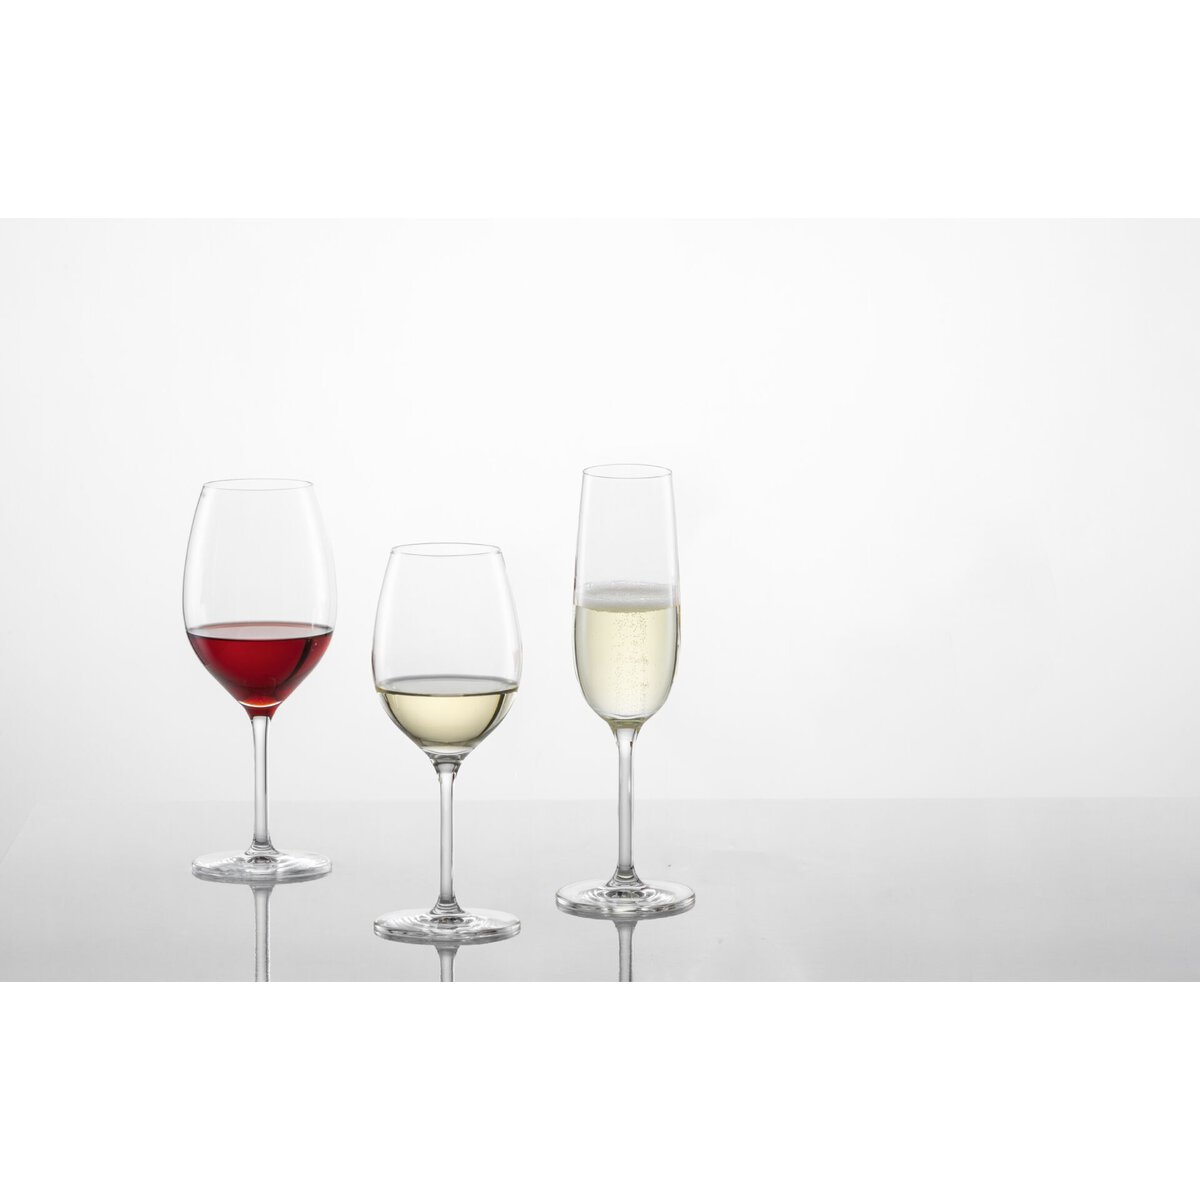 Glasserie "Banquet" Weißweinglas 365ml mit Füllstrich (4)